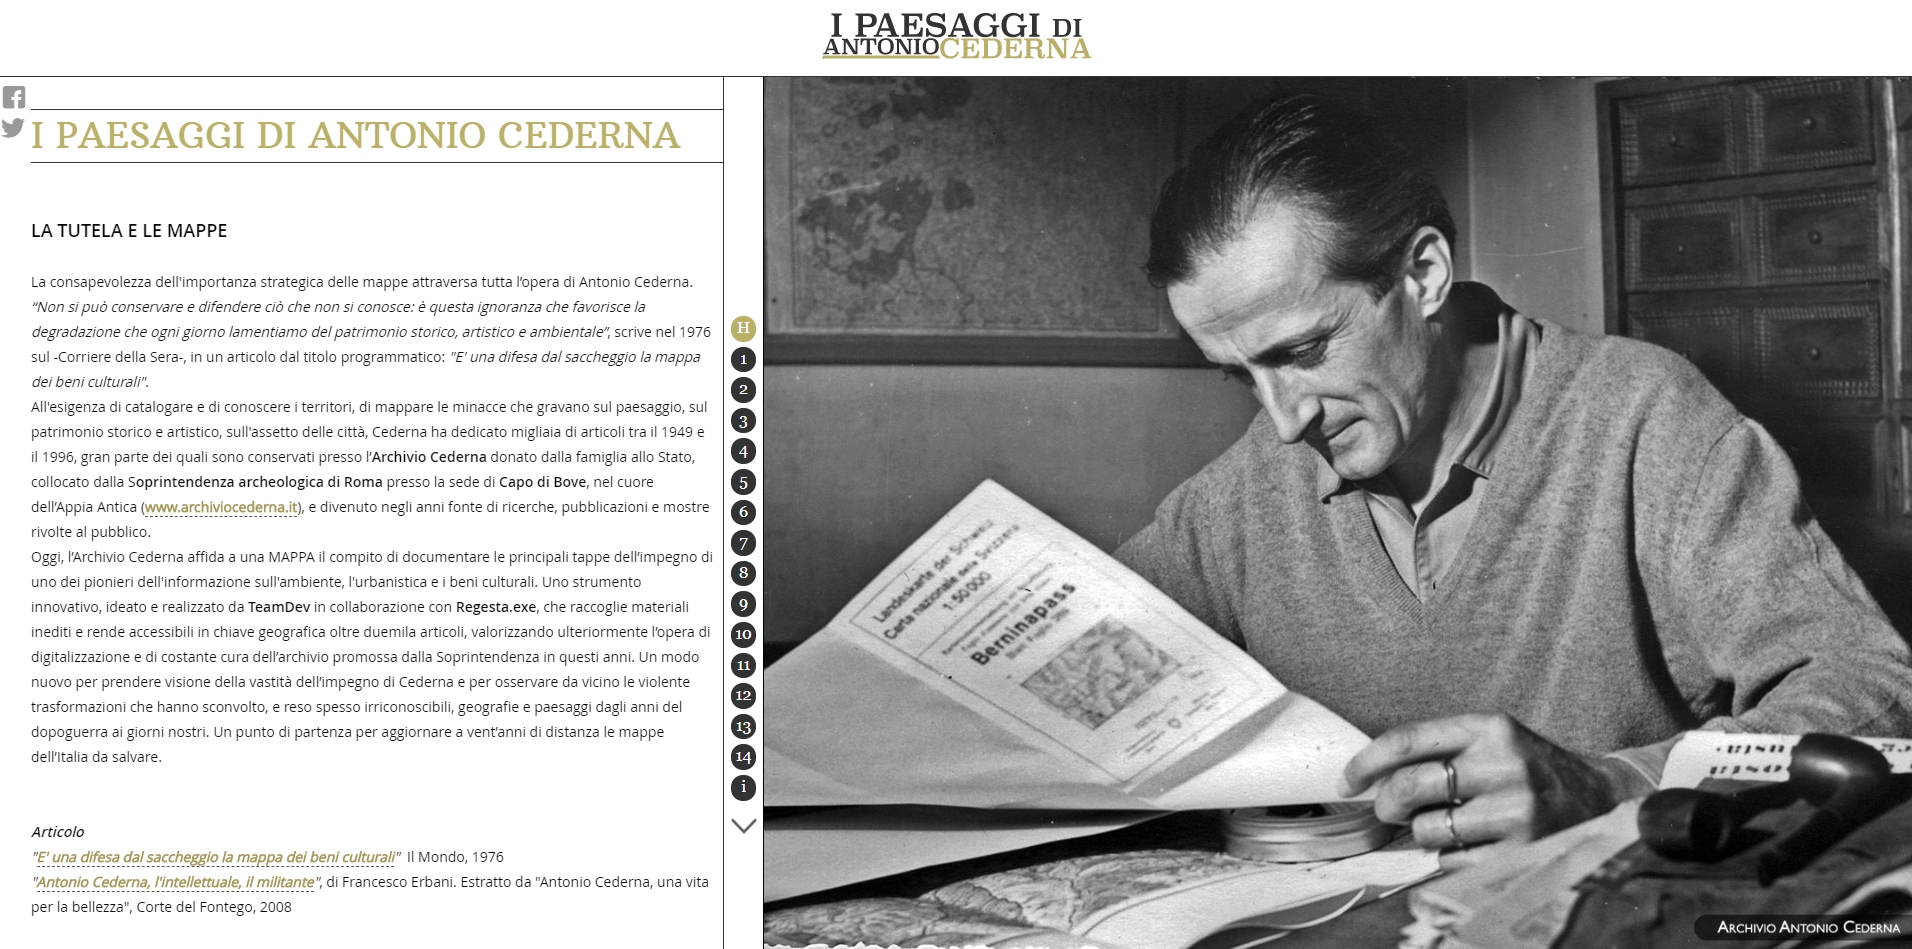 Una piattaforma geografica per raccogliere e divulgare gli articoli di Antonio Cederna